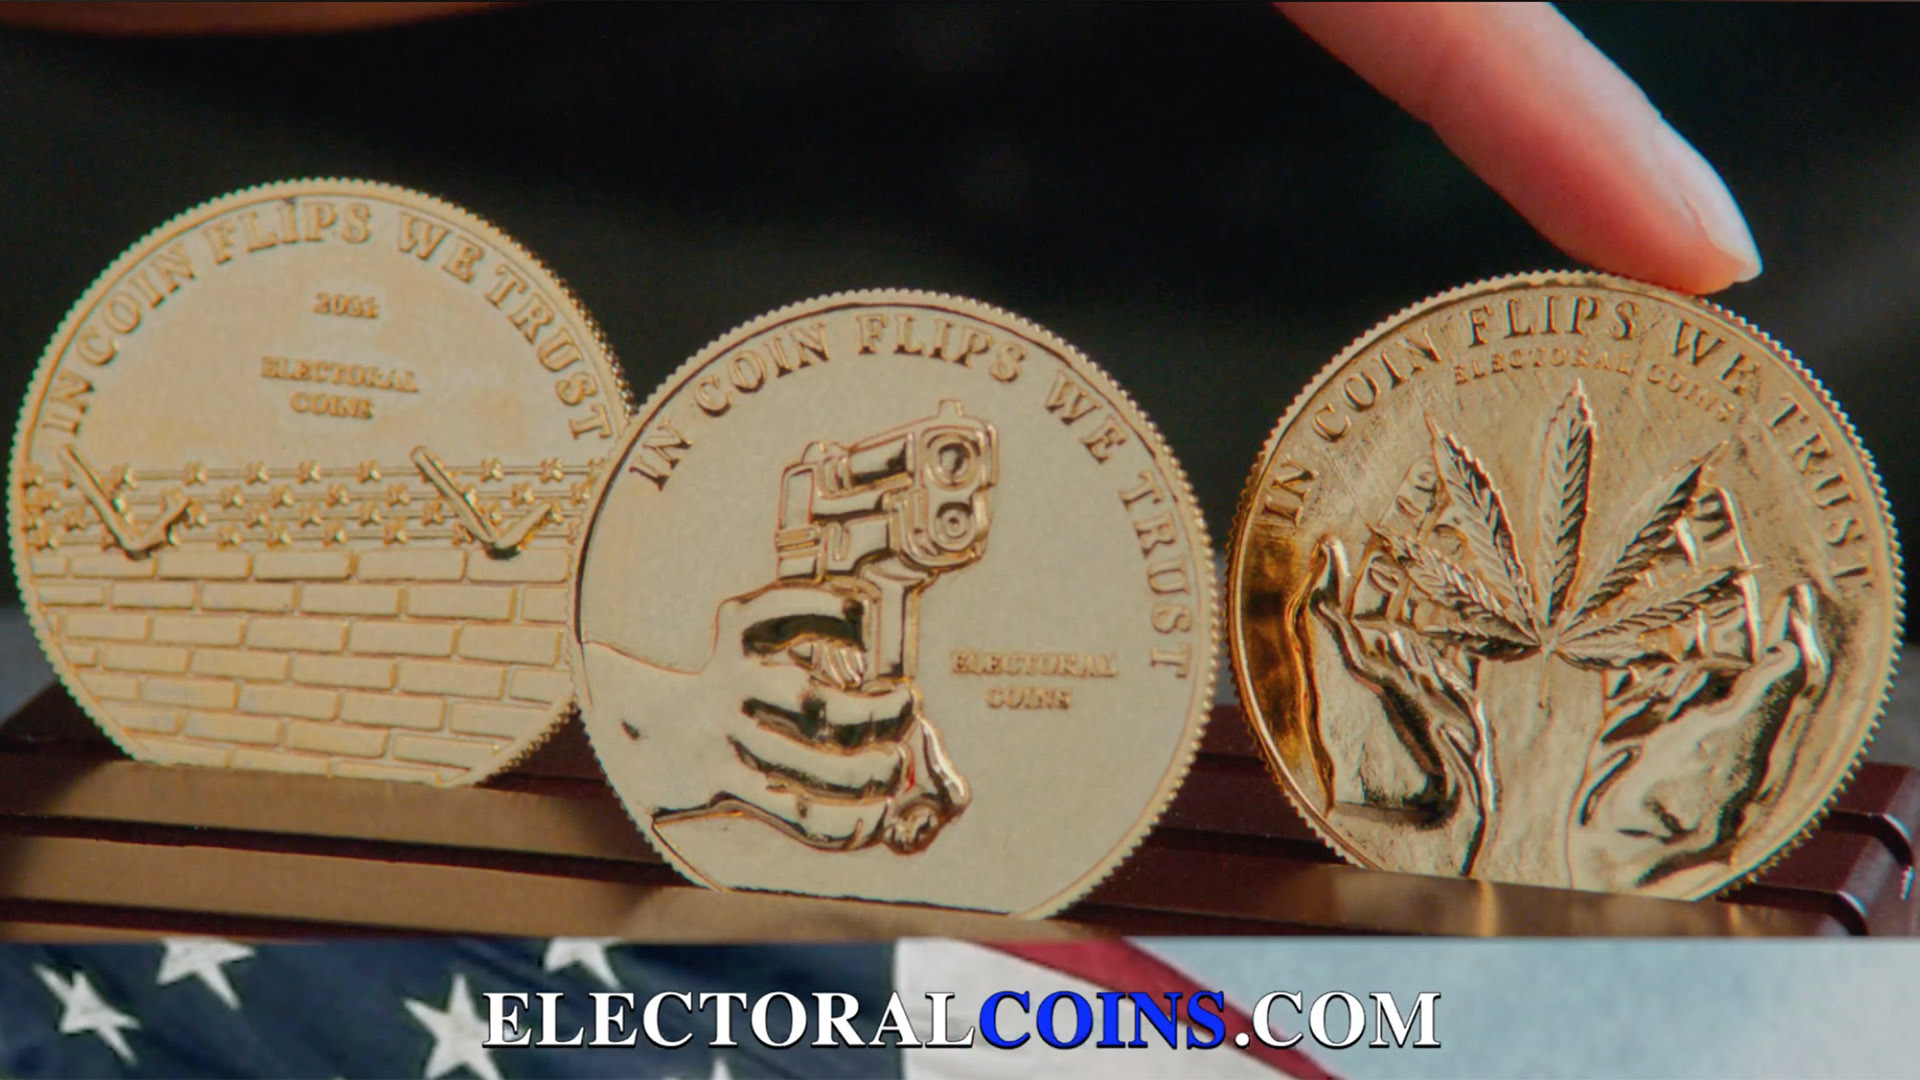 Electoral Coins